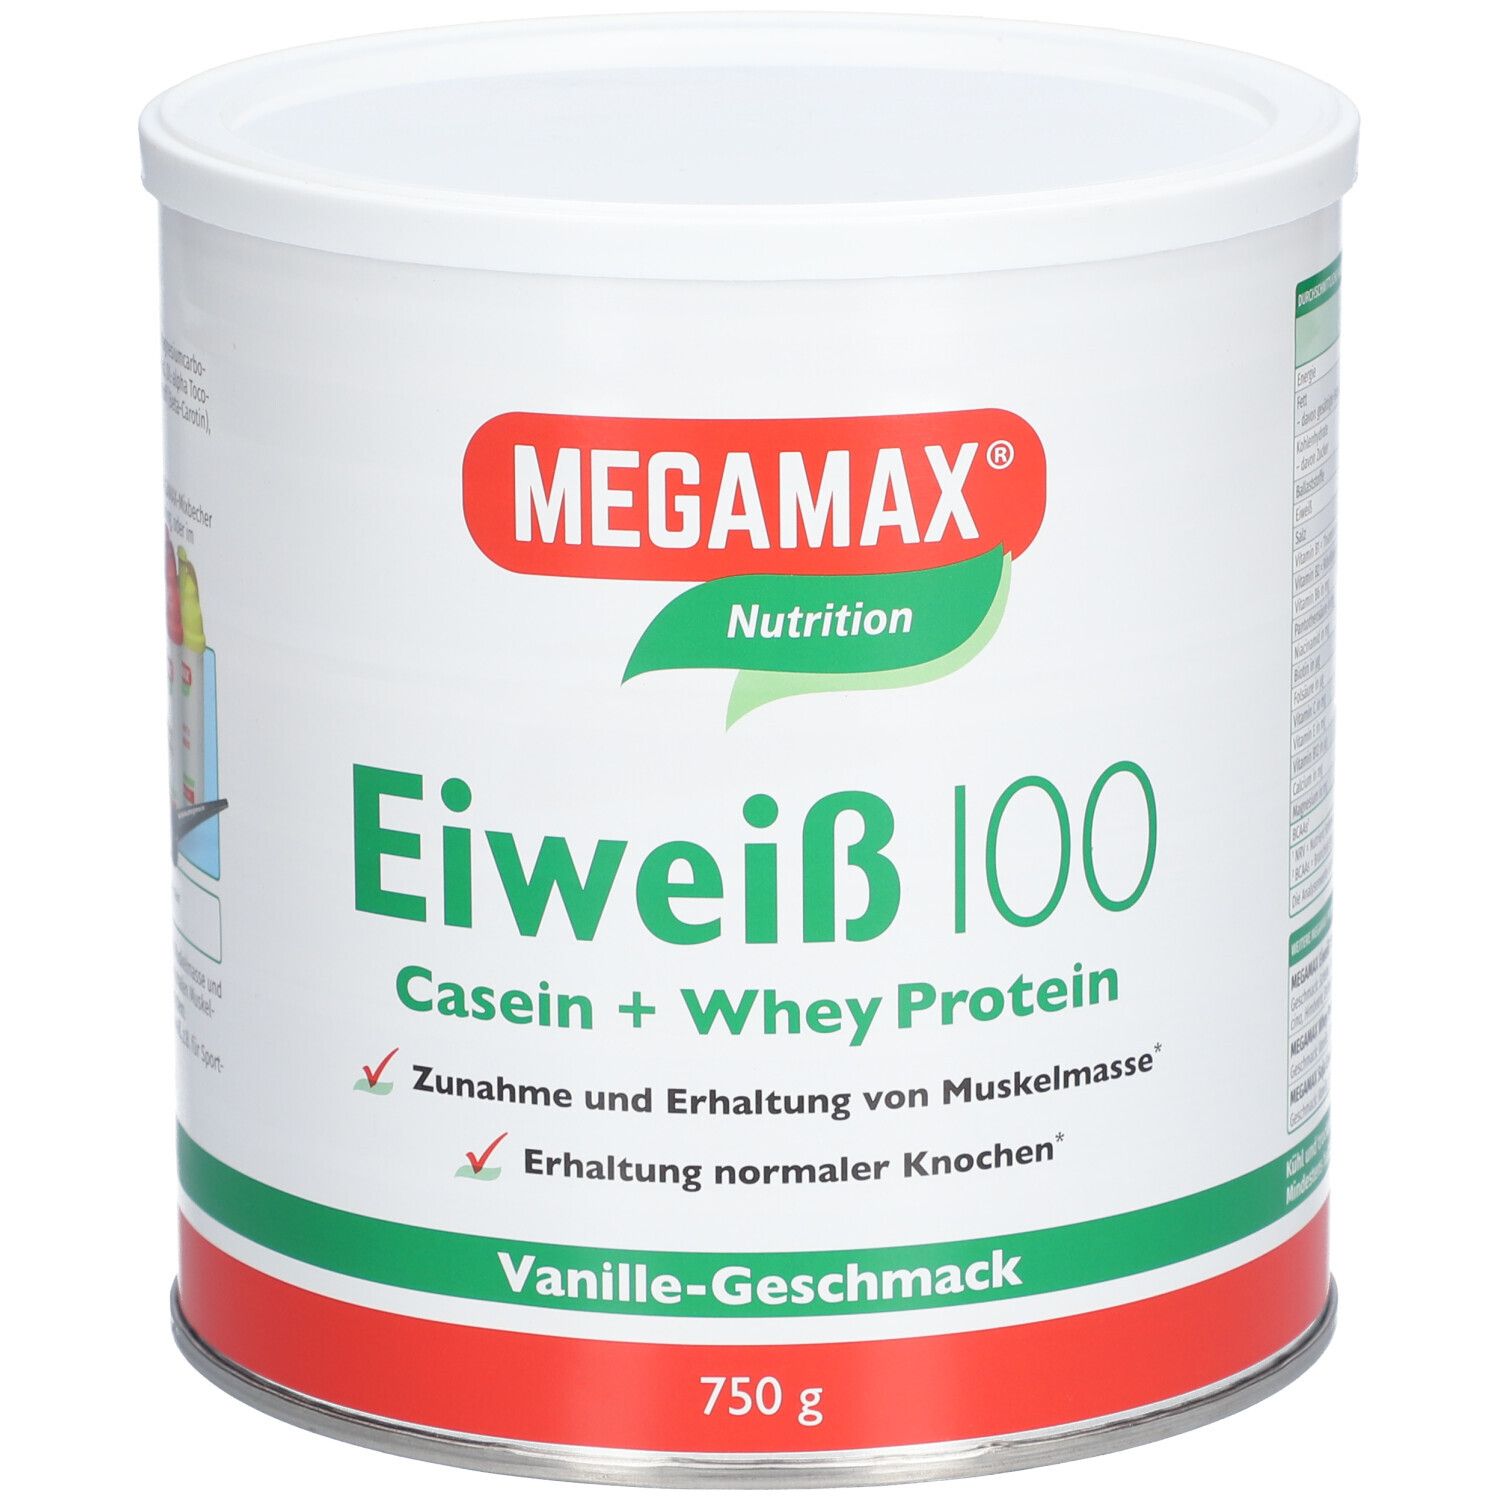 MEGAMAX® Nutrition Eiweiß 100 Vanille-Geschmack